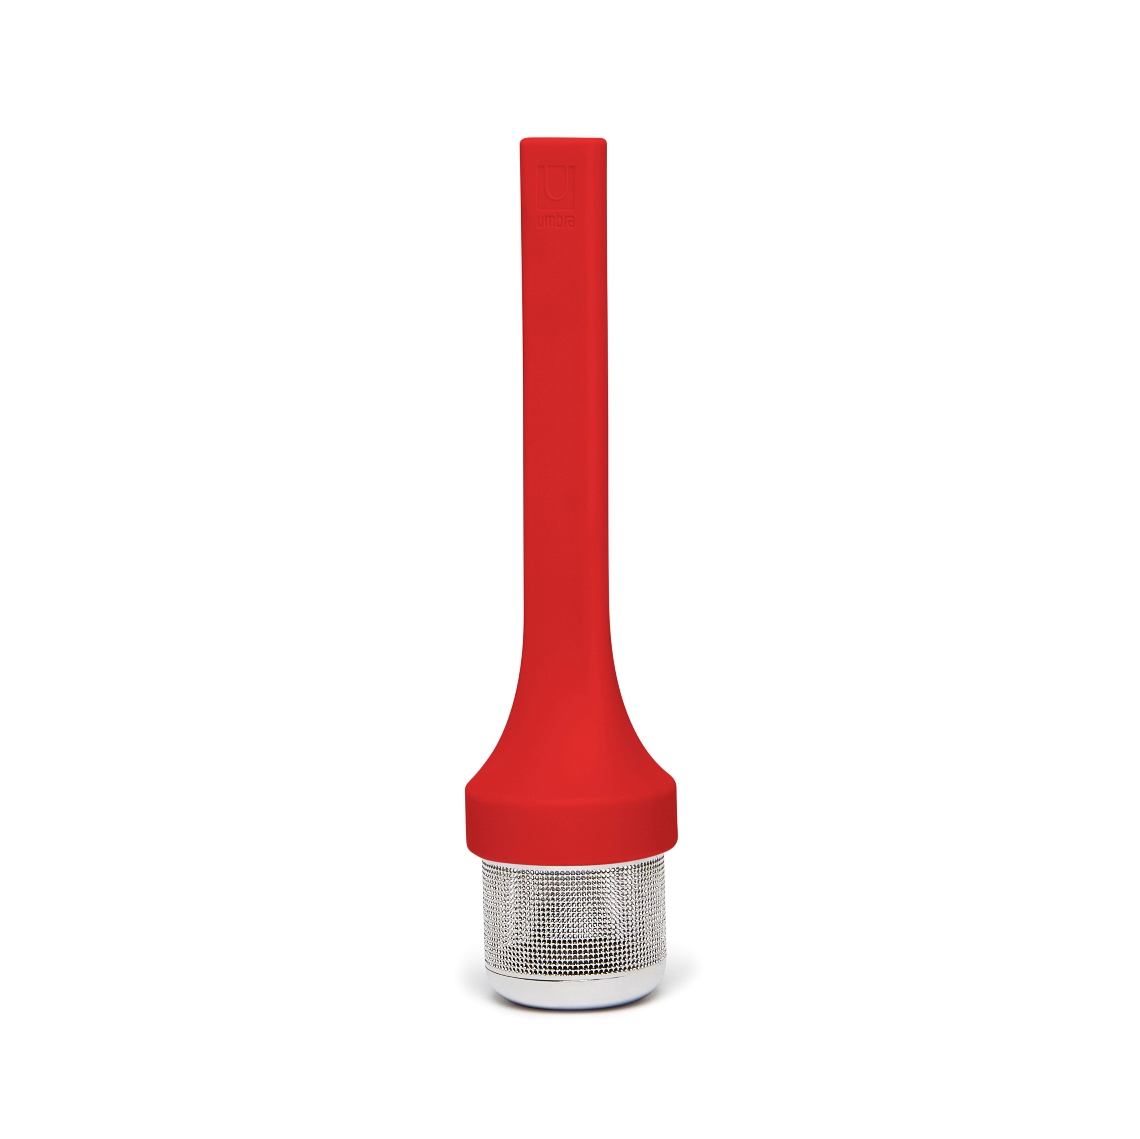 Емкость для заваривания Mytea red, 4 см, 17 см, Силикон, Umbra, Канада